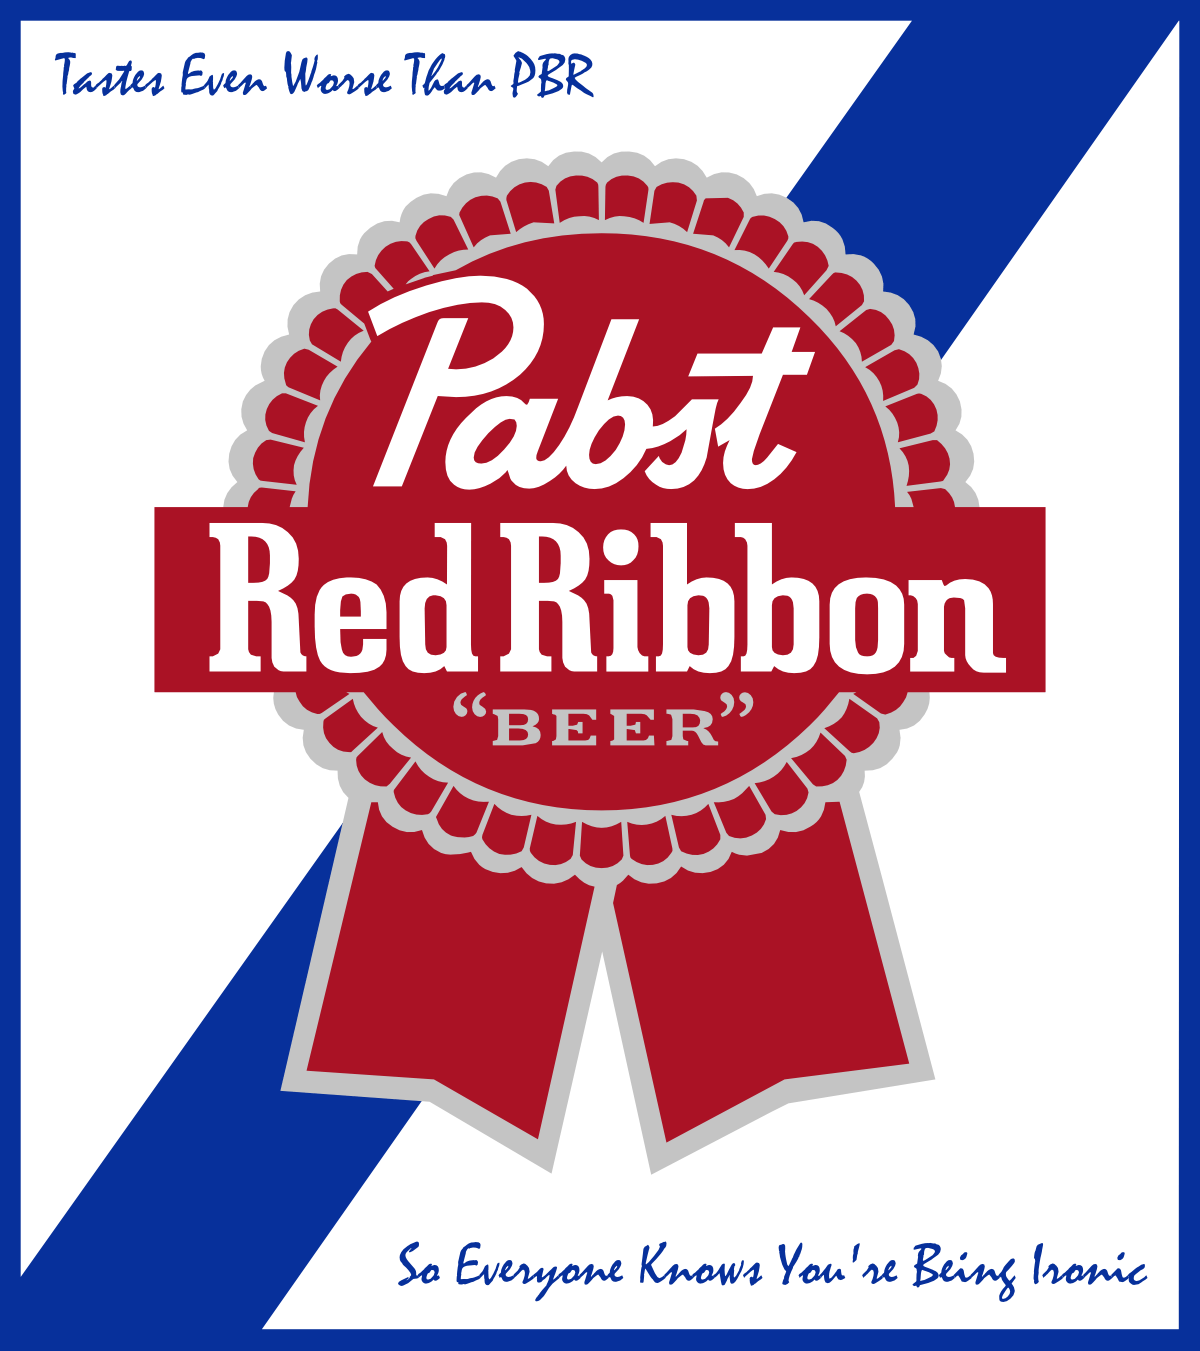 Pink and Blue Ribbon Logo - Red and blue ribbon Logos